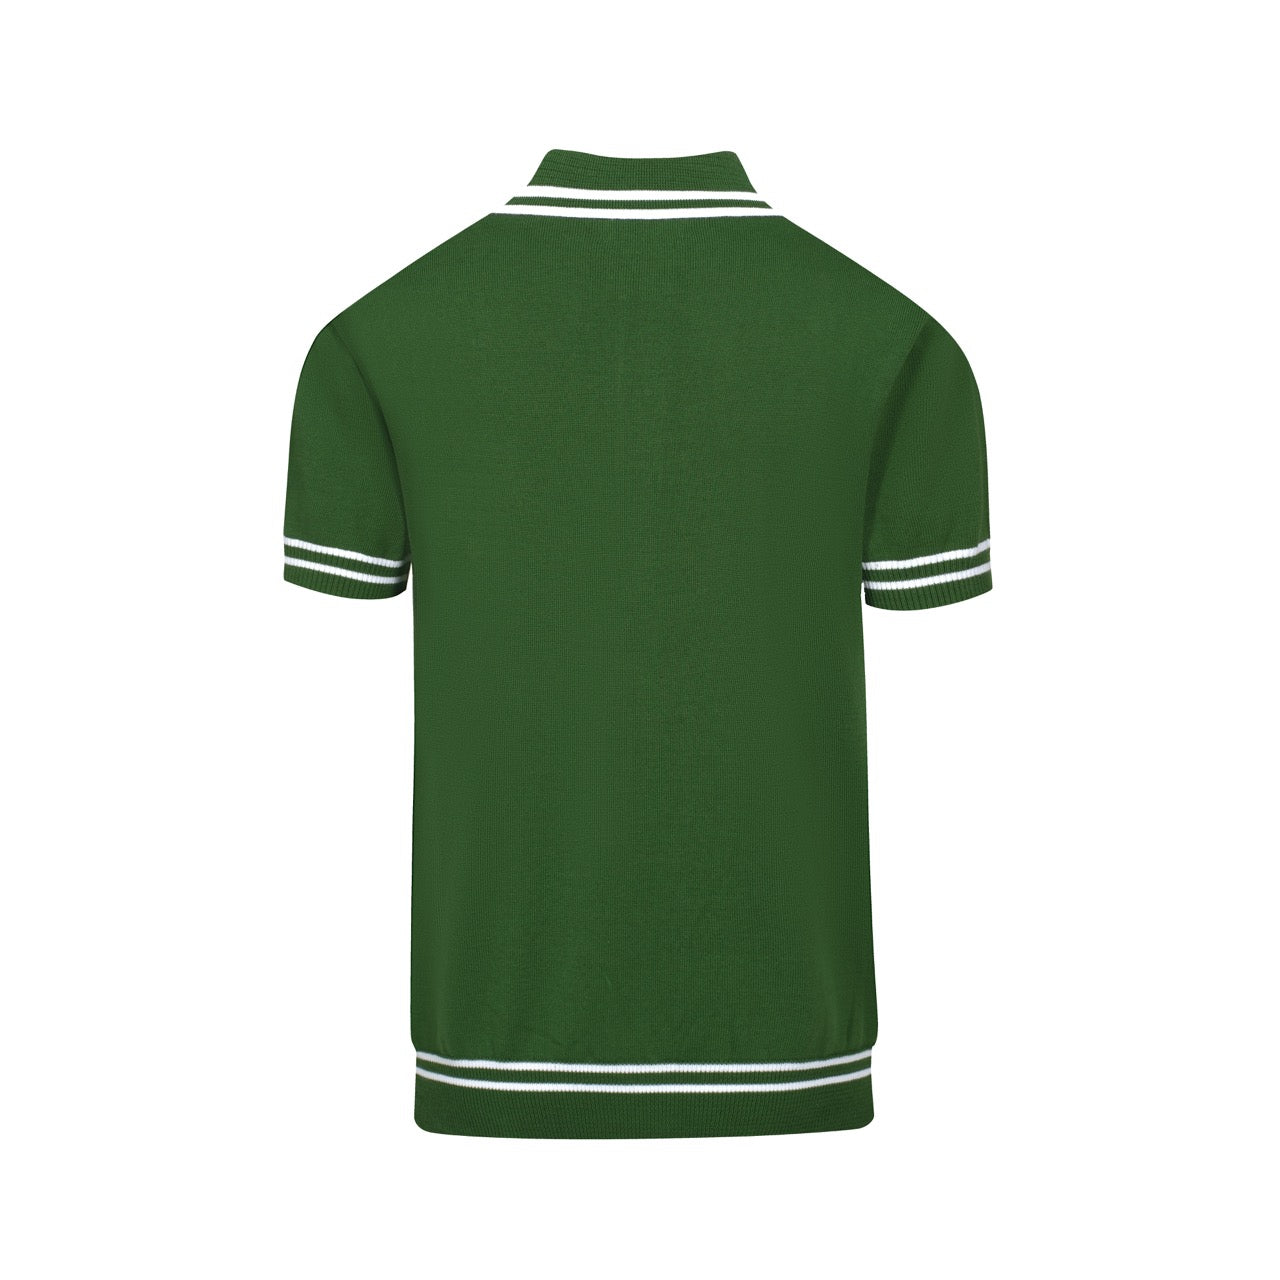 Polo rétro en tricot vert foncé décontracté des années 1960 pour hommes